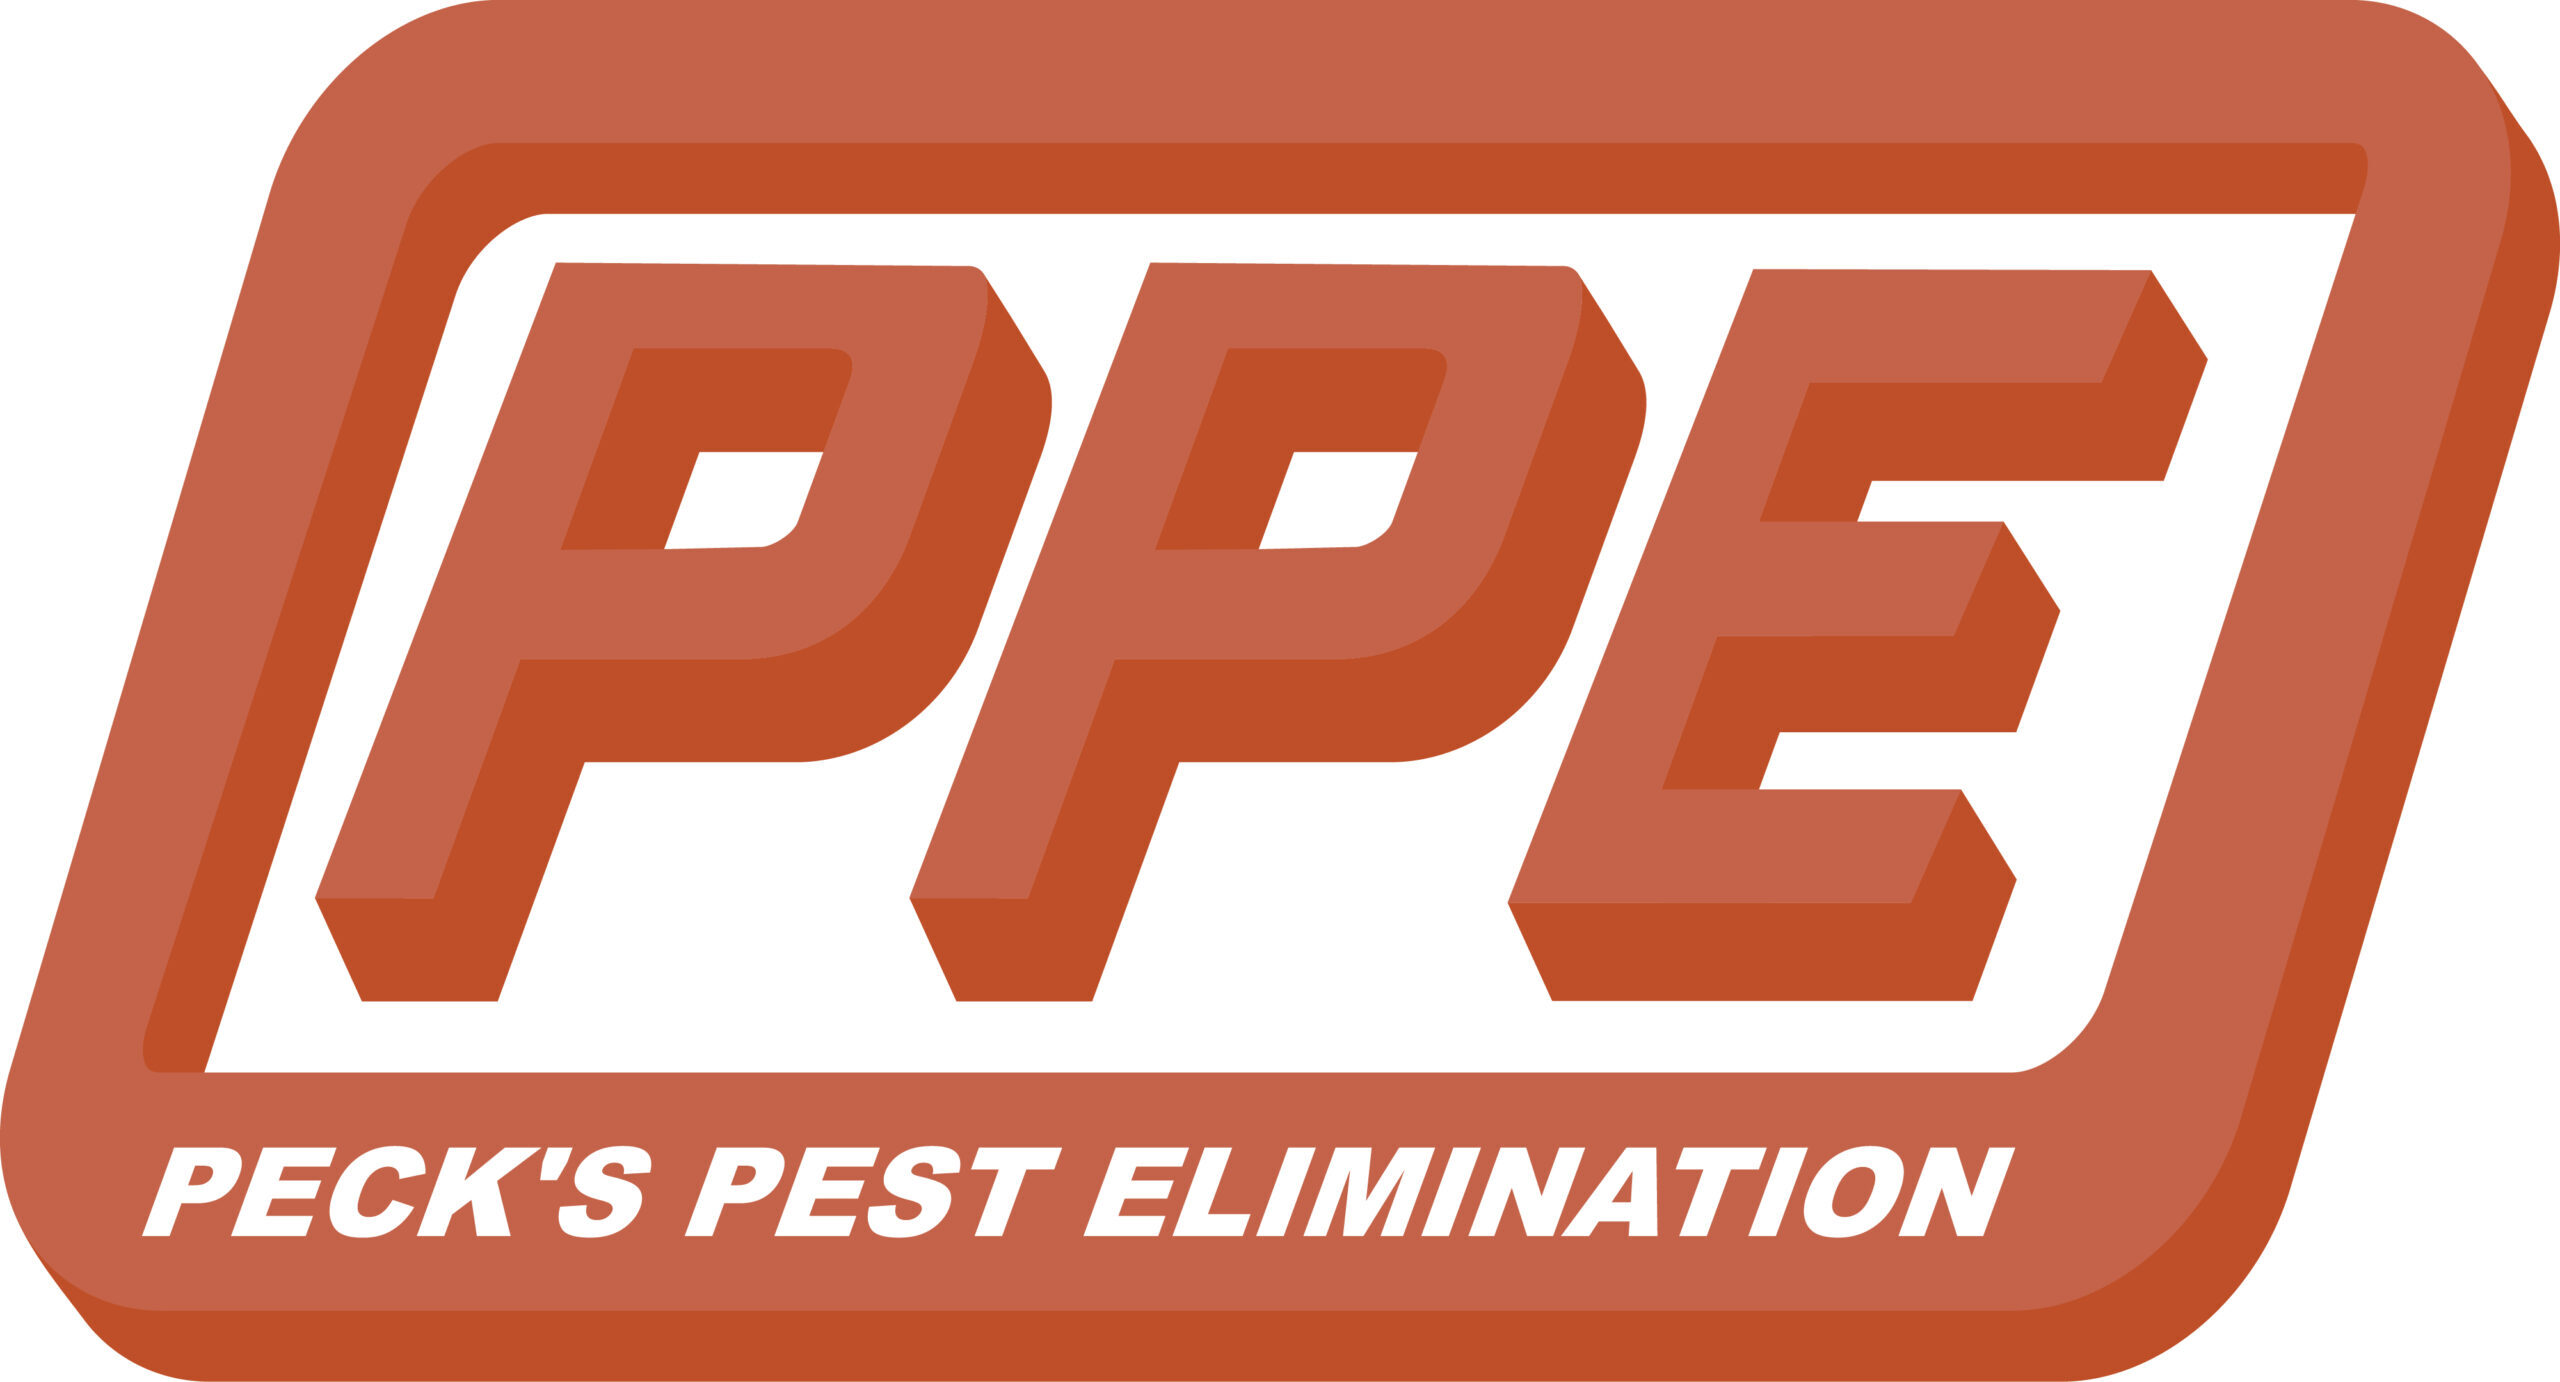 Peck's Pest Elimination